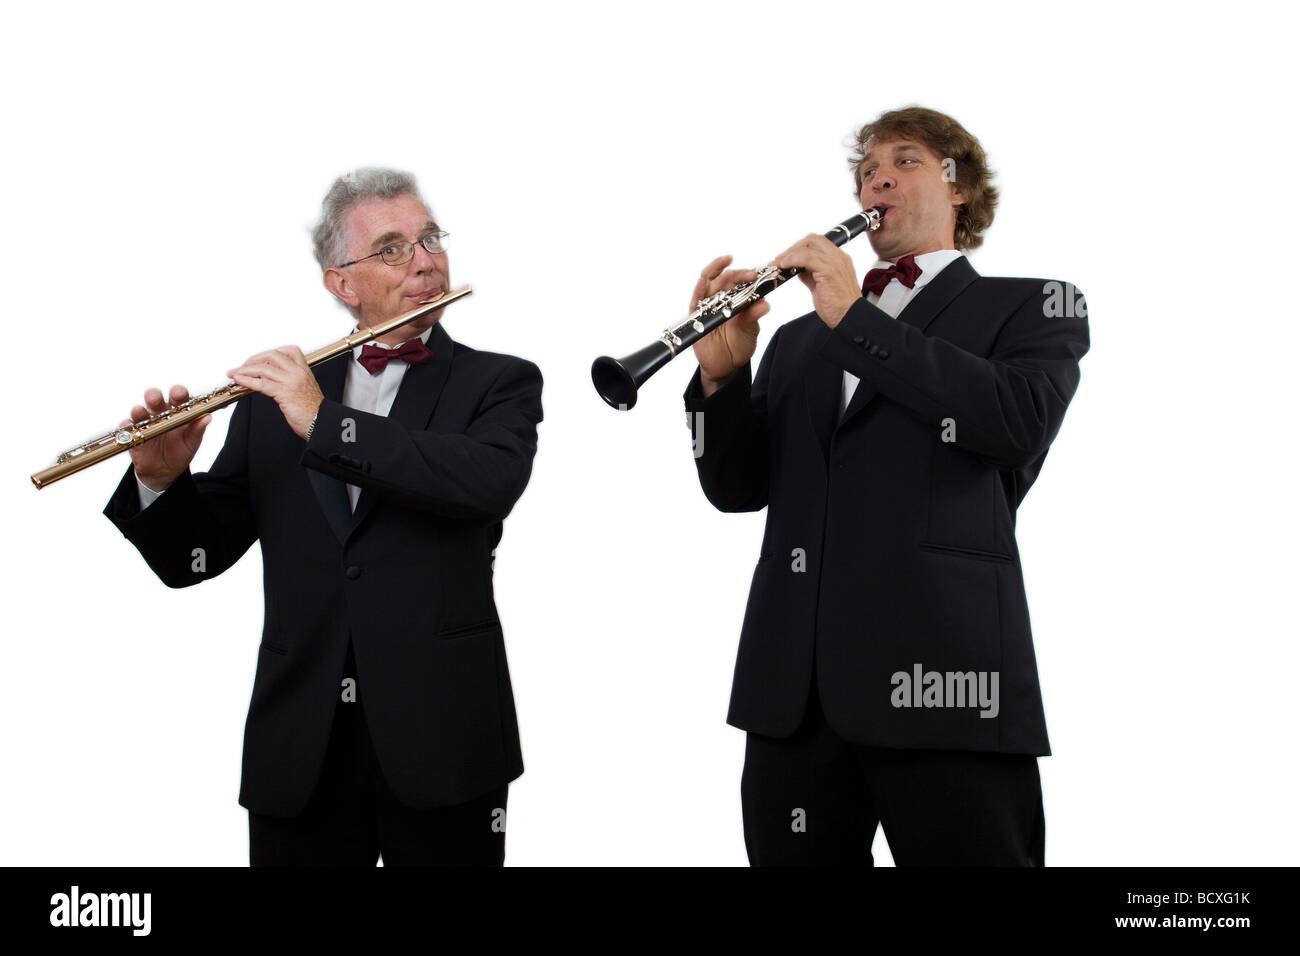 Un duo de musiciens dans un costume et une cravate d'arc (France). Duo de musiciens en costume et noeud papillon (France). Banque D'Images